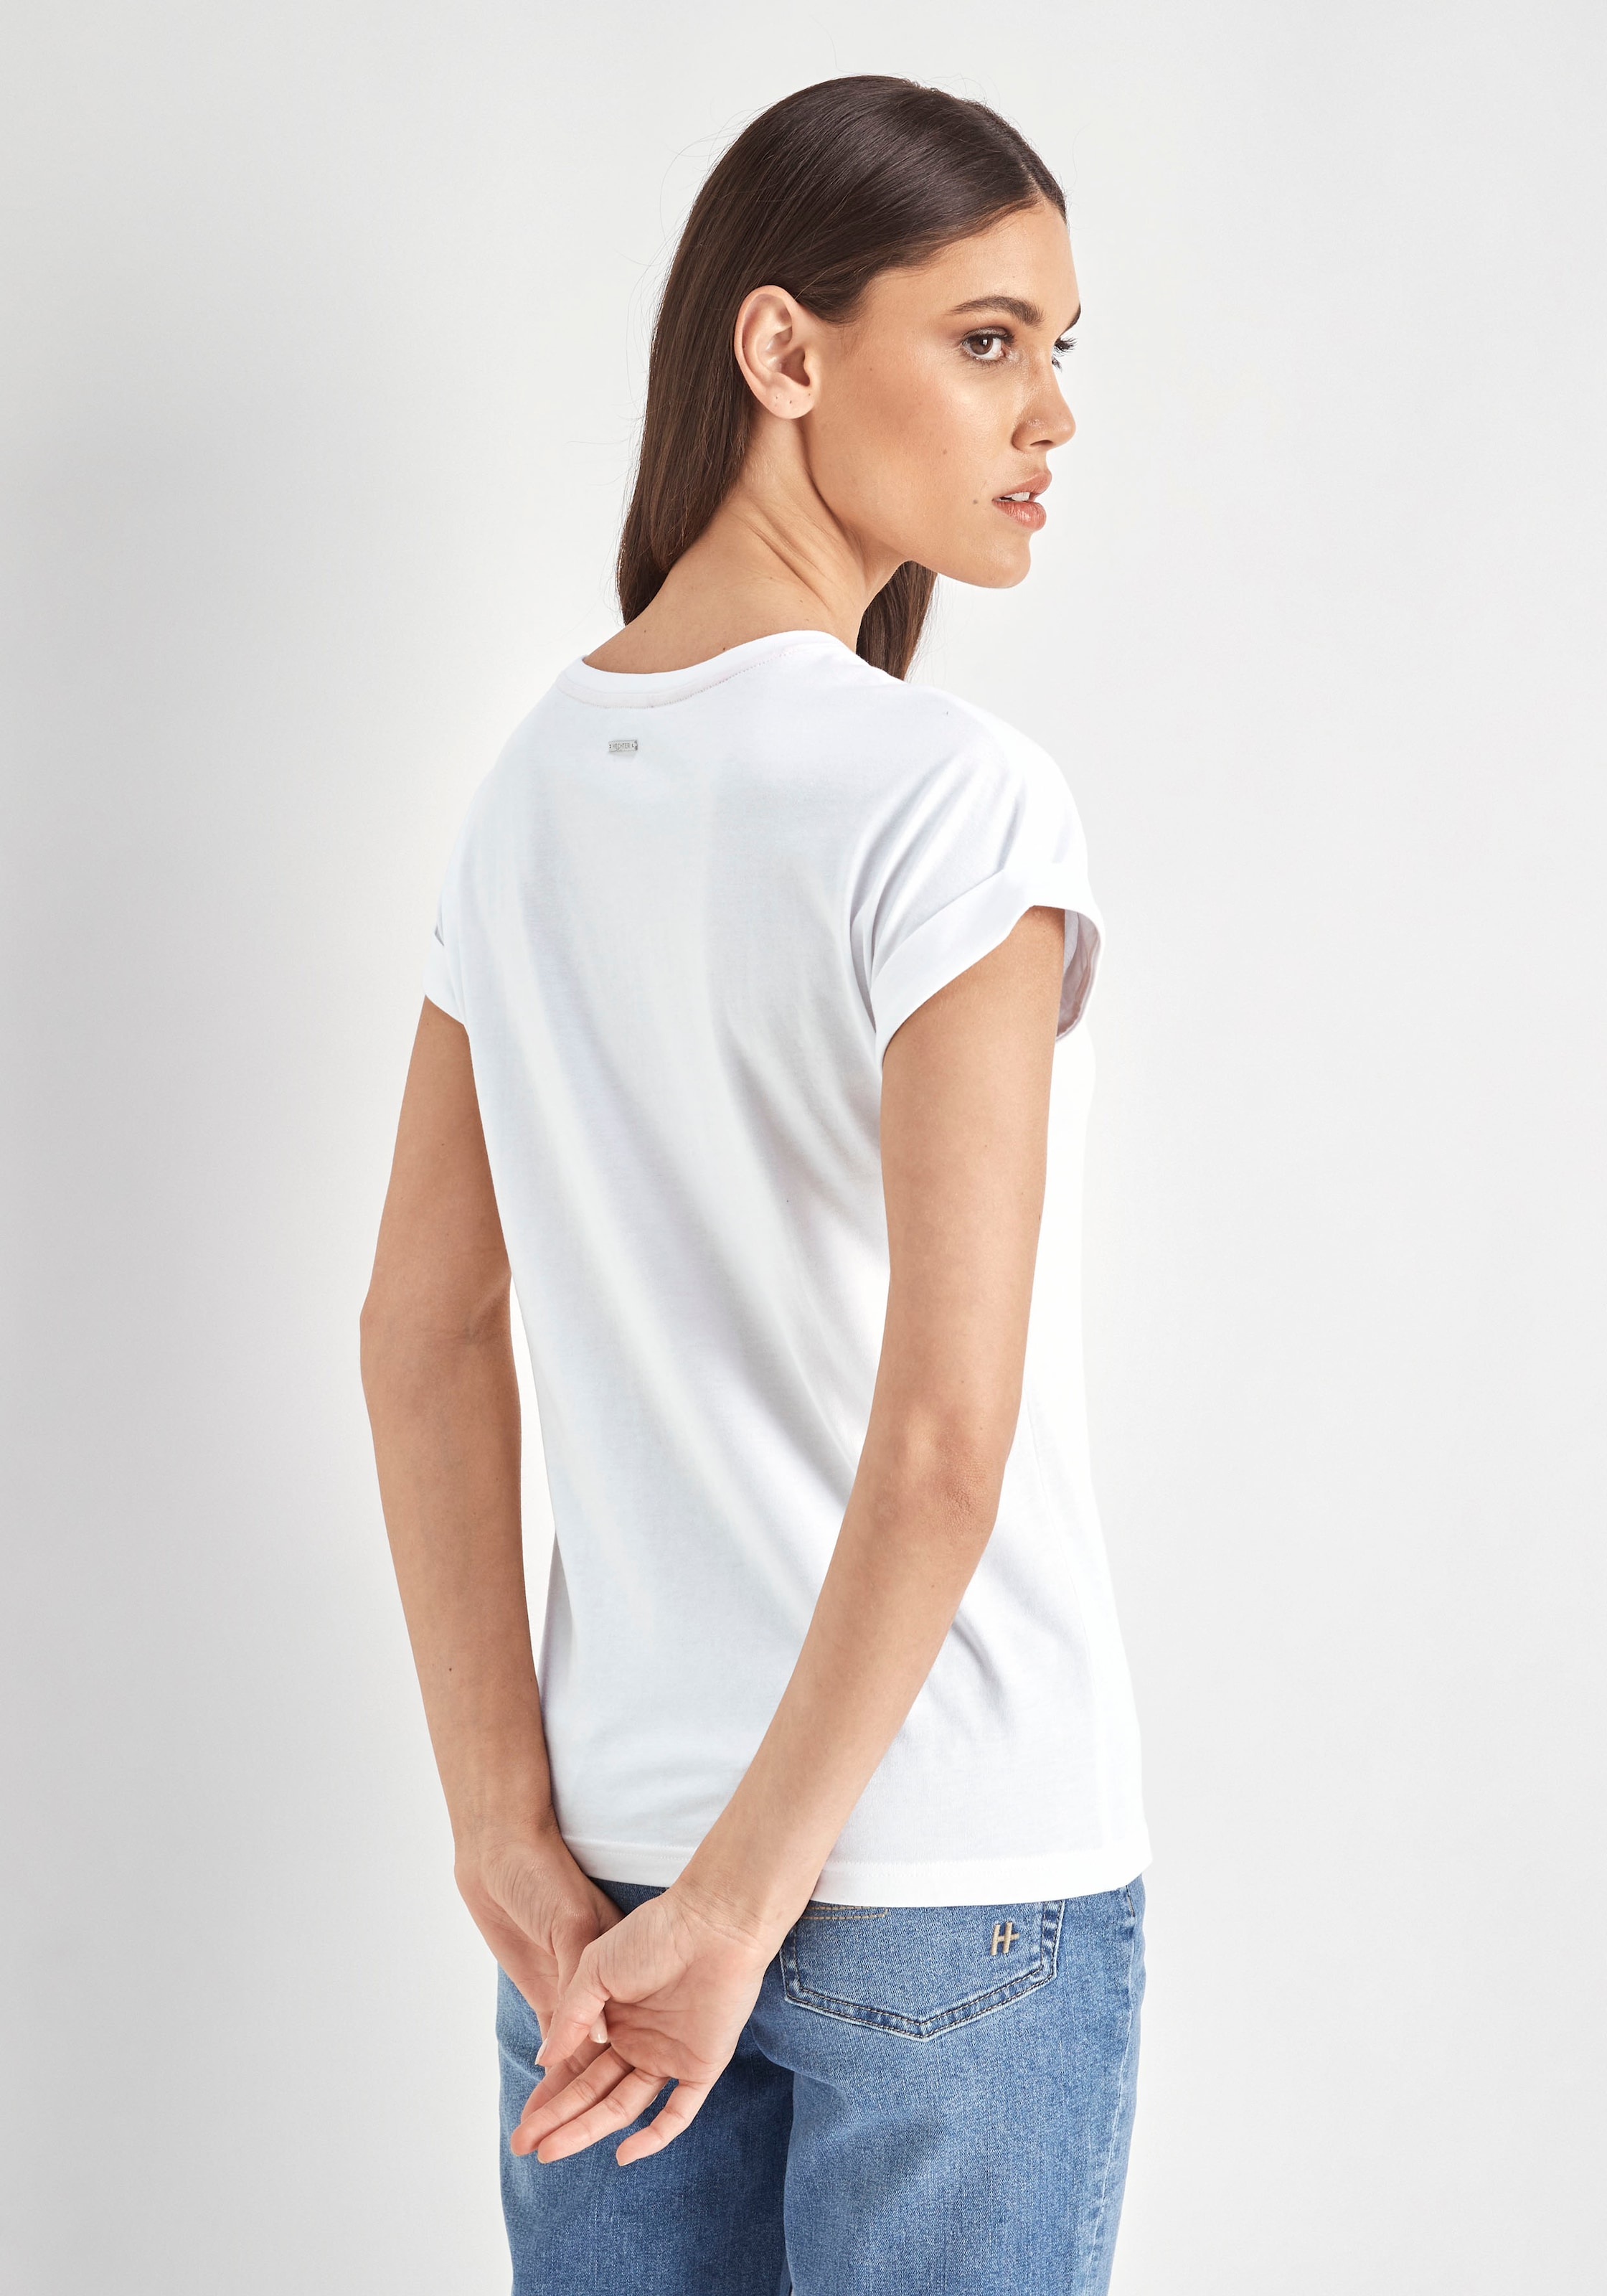 HECHTER PARIS T-Shirt, mit OTTO bei Logostickerei kaufen auf dezenter Brust der